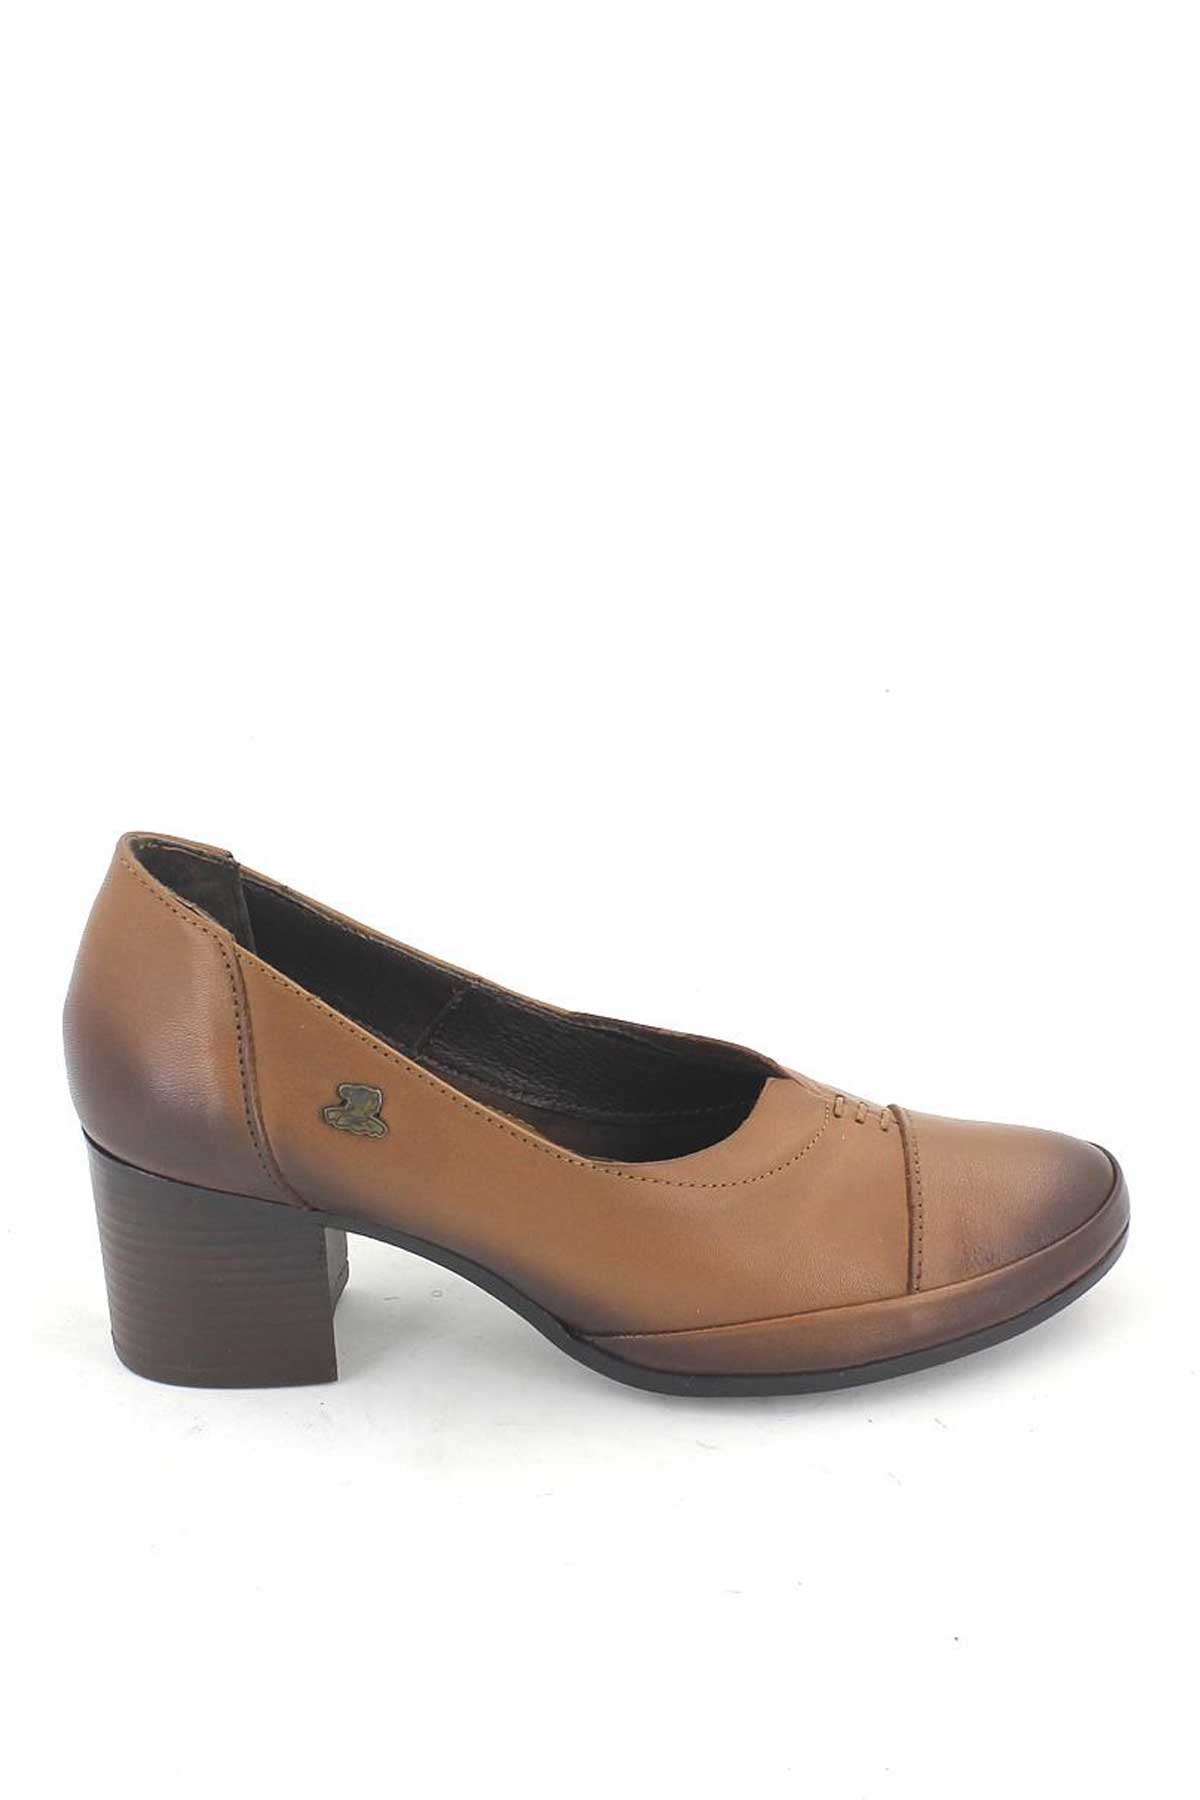 Kadın Topuklu Deri Ayakkabı Taba 1911901K